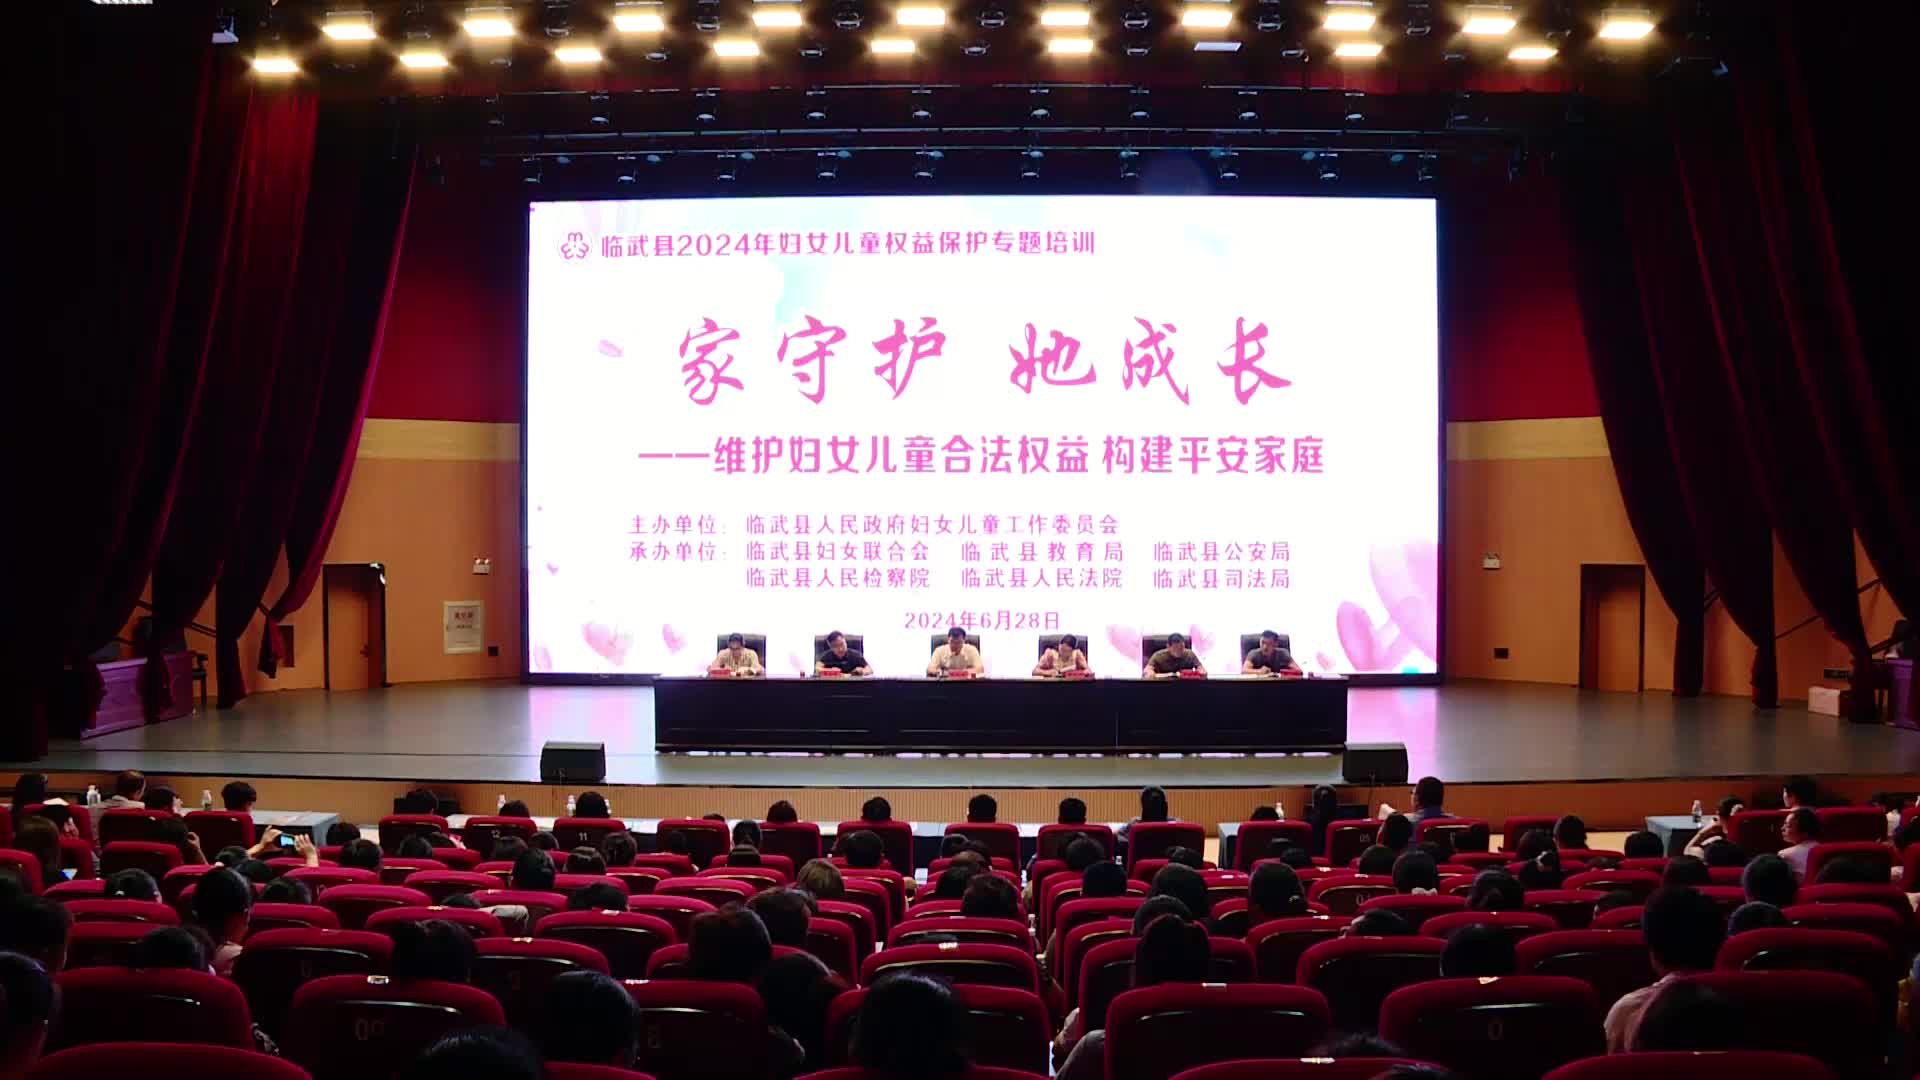 临武县组织开展2024年妇女儿童权益保护专题培训